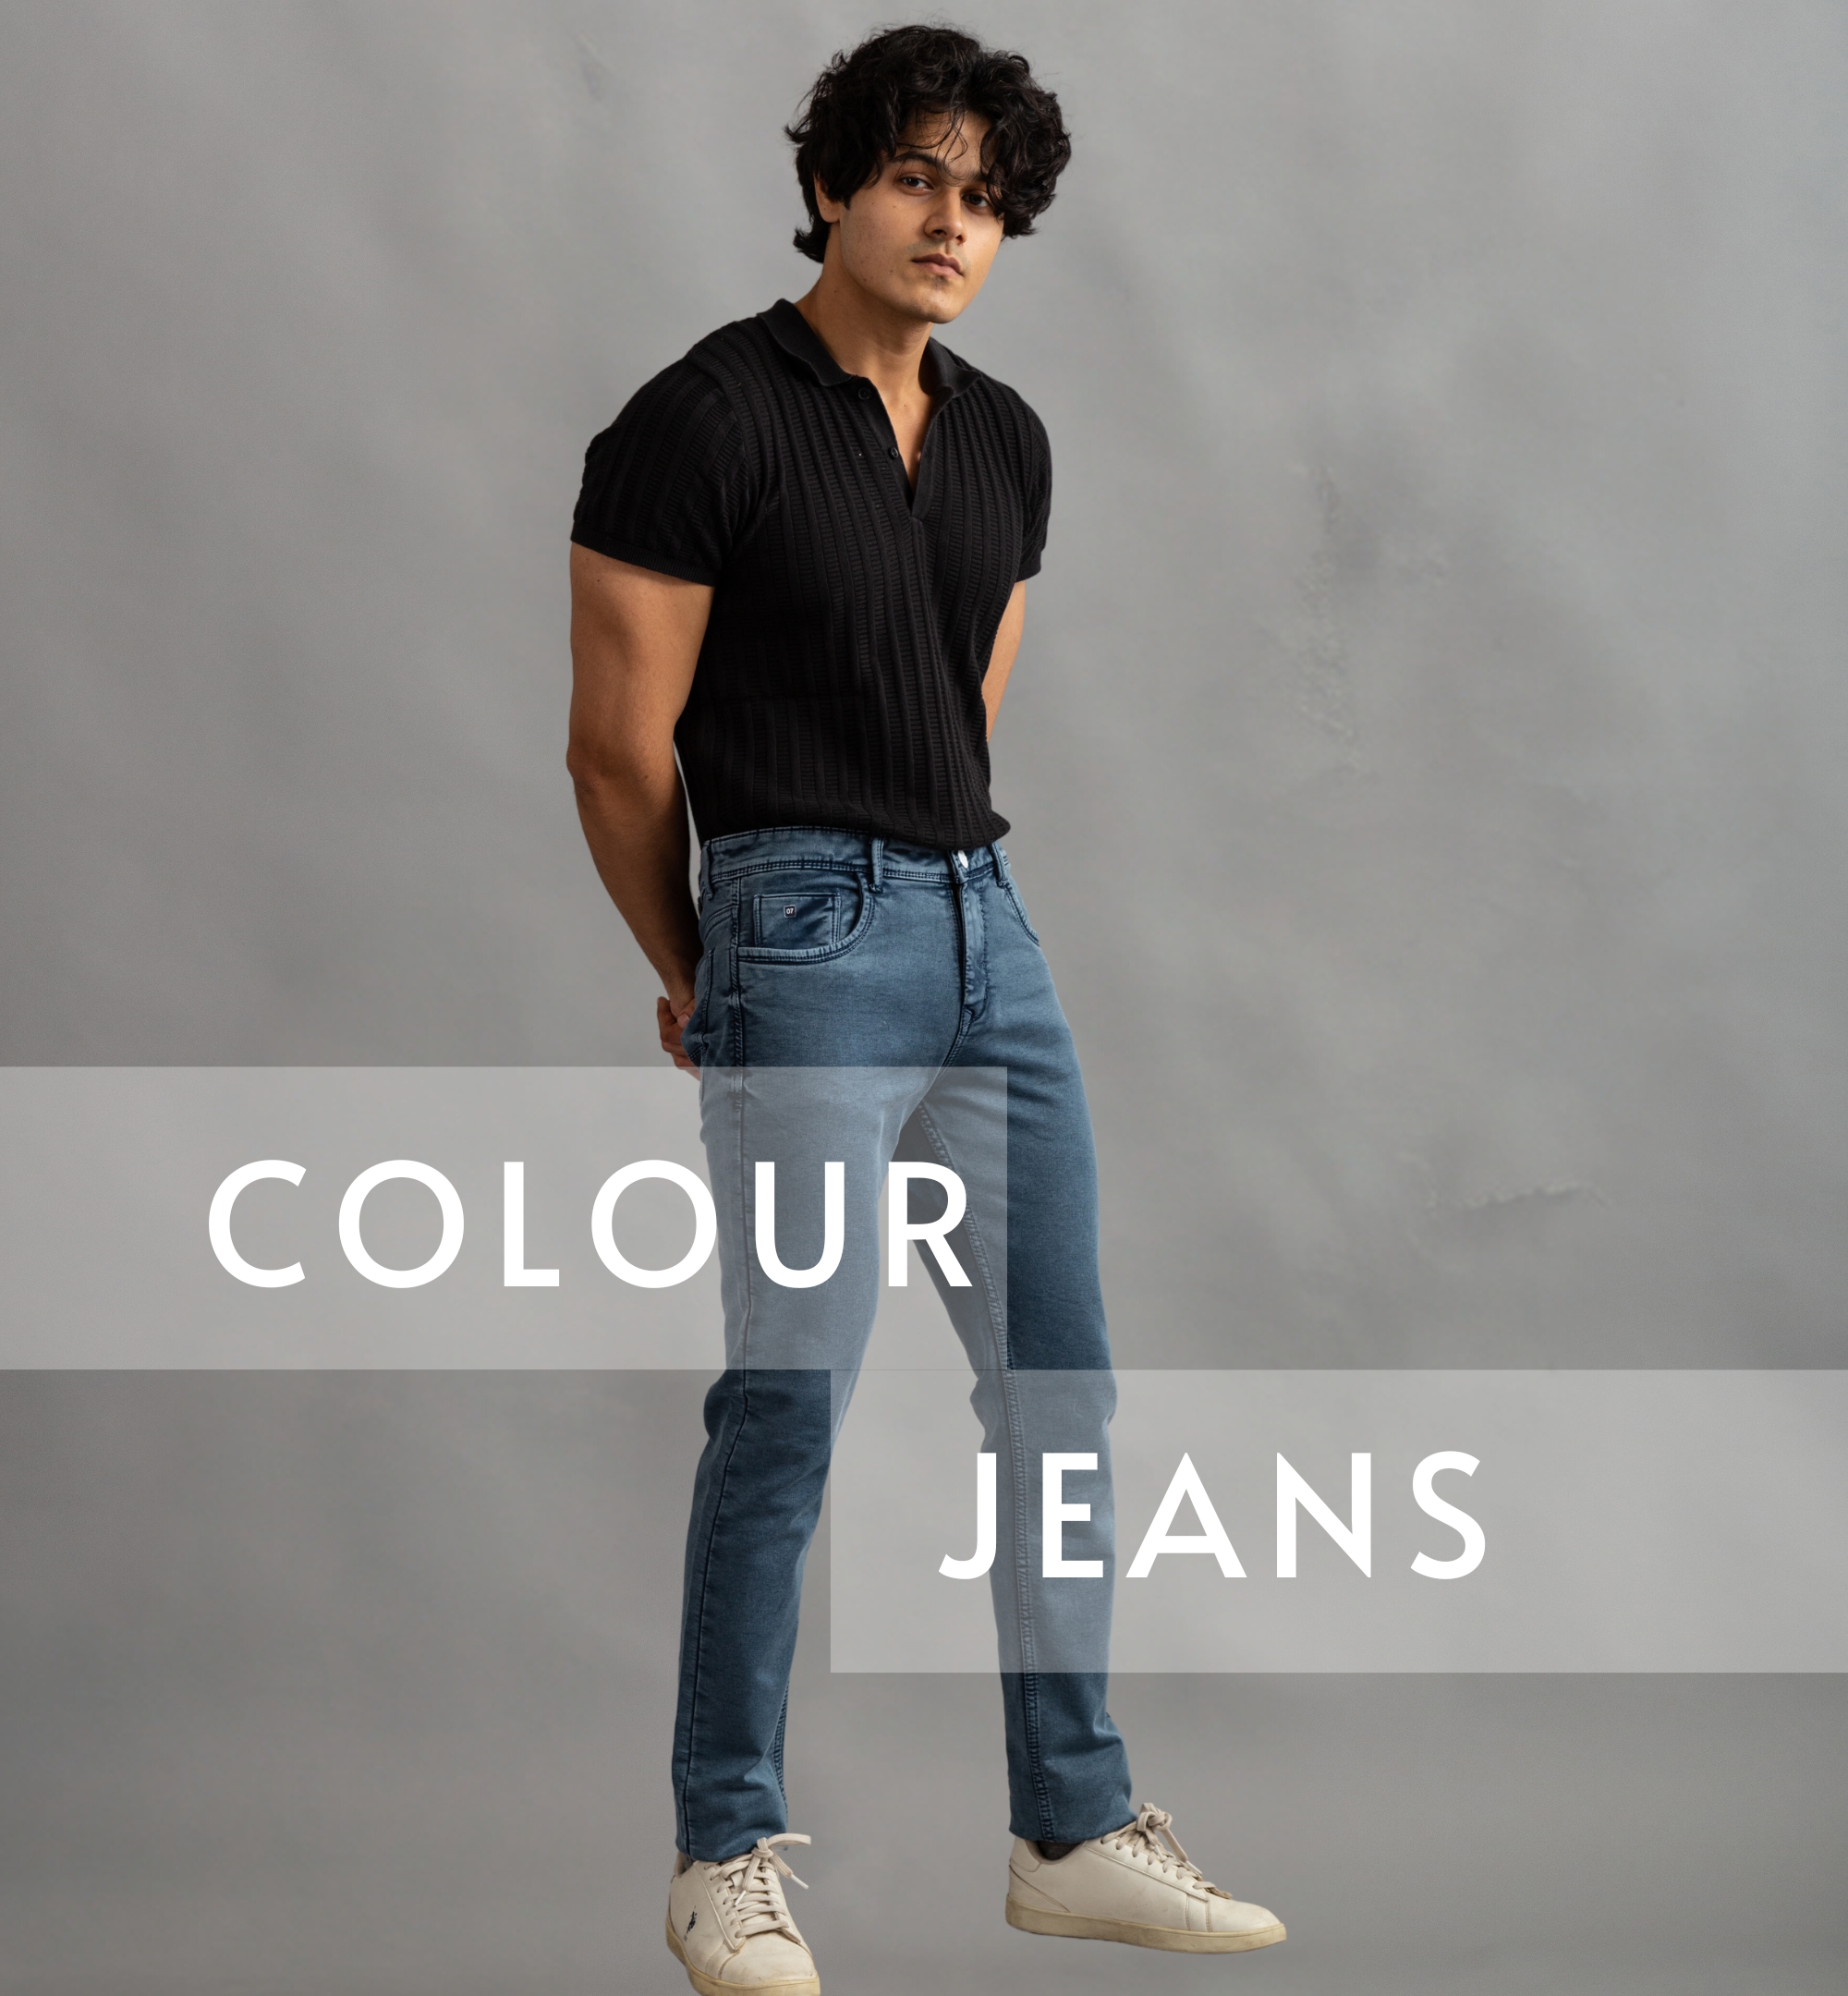 Colour Jeans